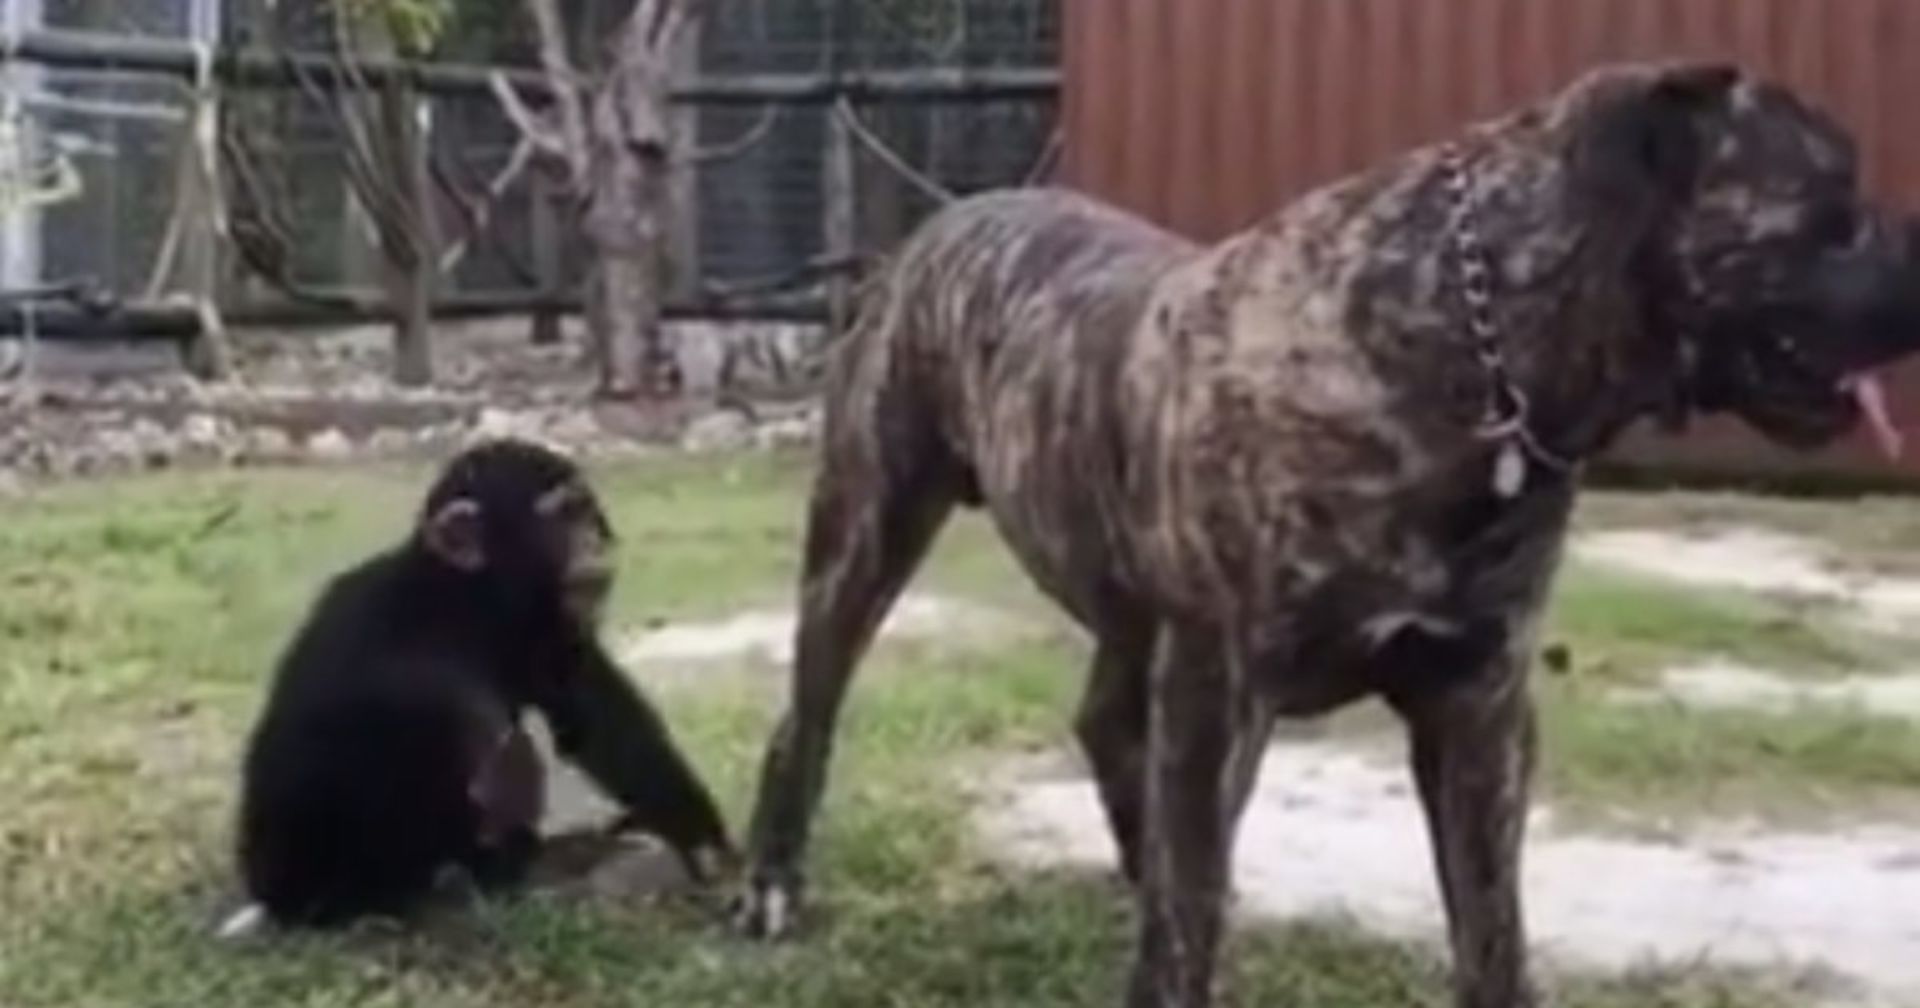 Schimpanse greift Riesen-Pitbull von hinten an. Seine Reaktion macht sprachlos!